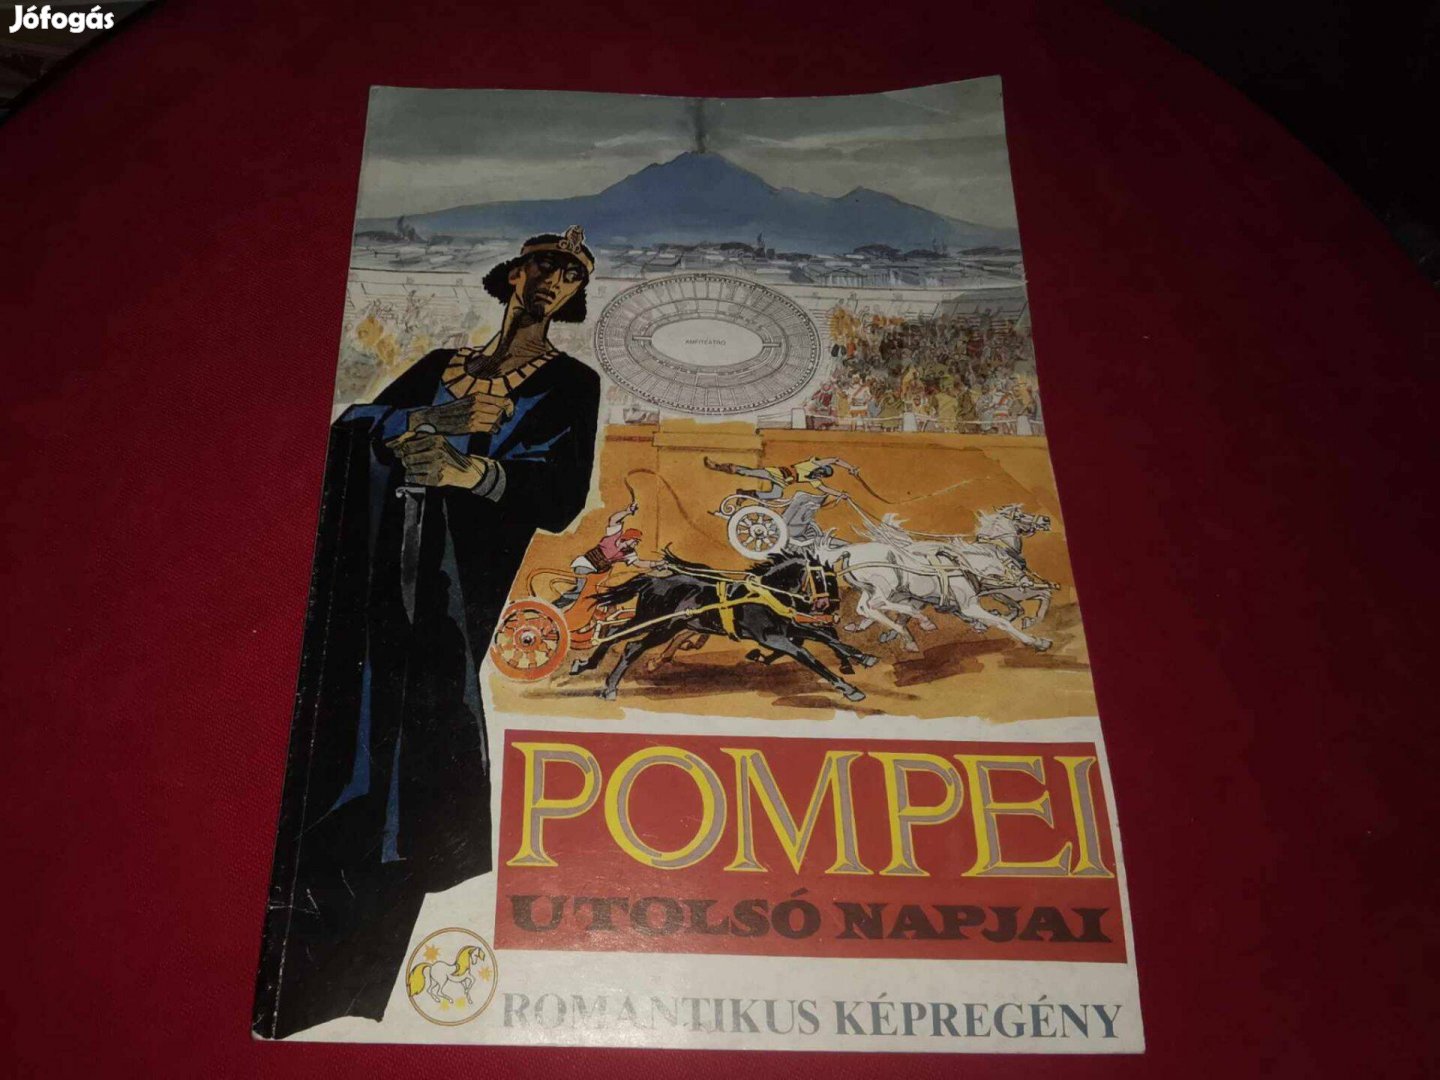 Pompeji utolsó napjai Romantikus képregény